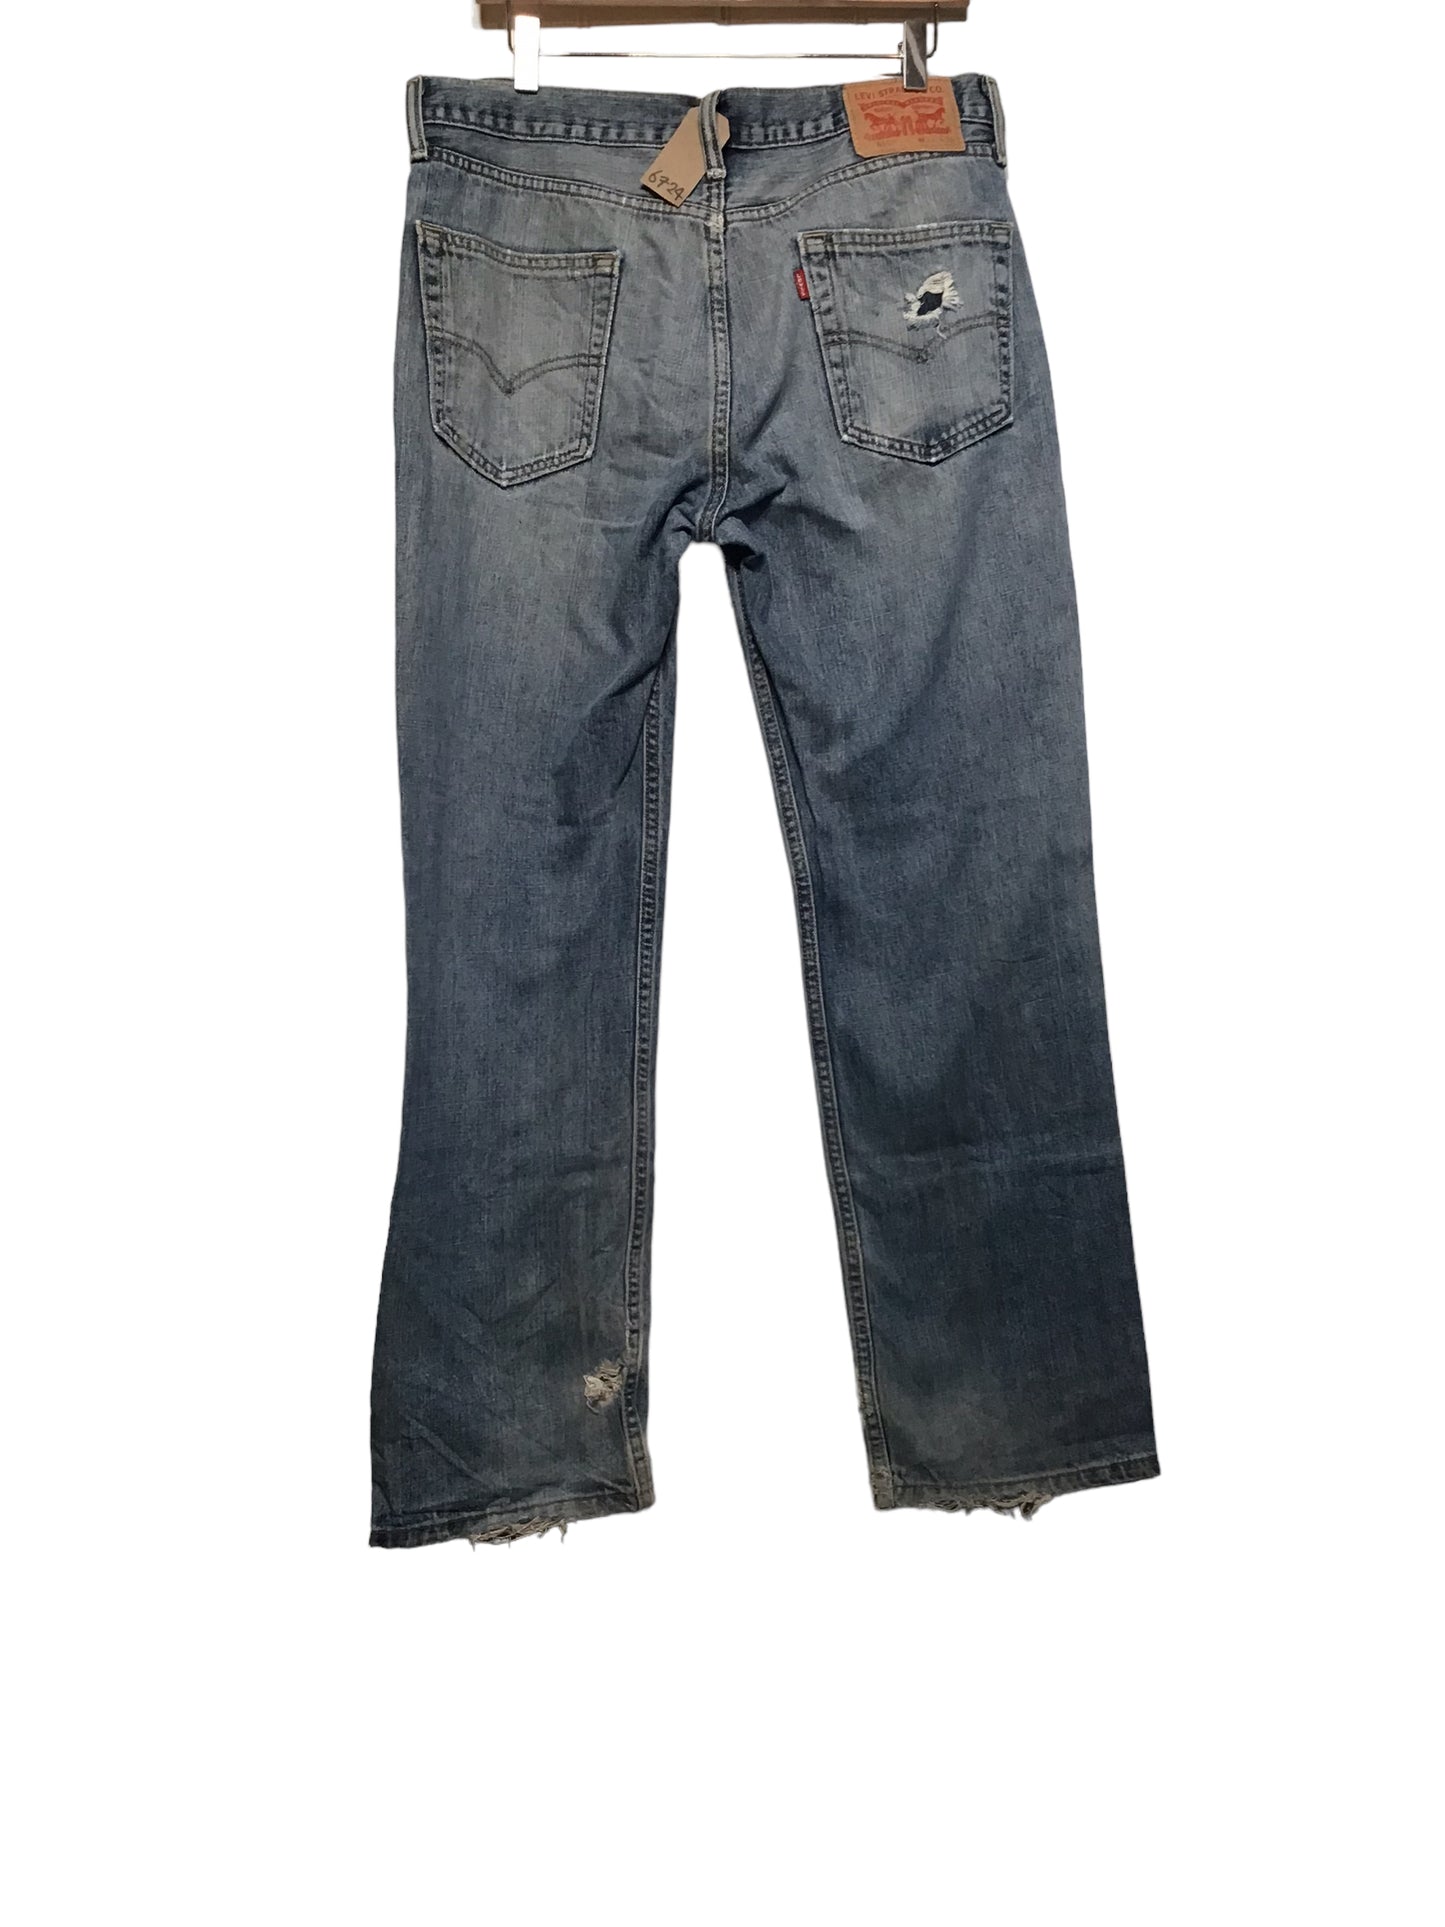 Levi 514 Jeans (31x30)